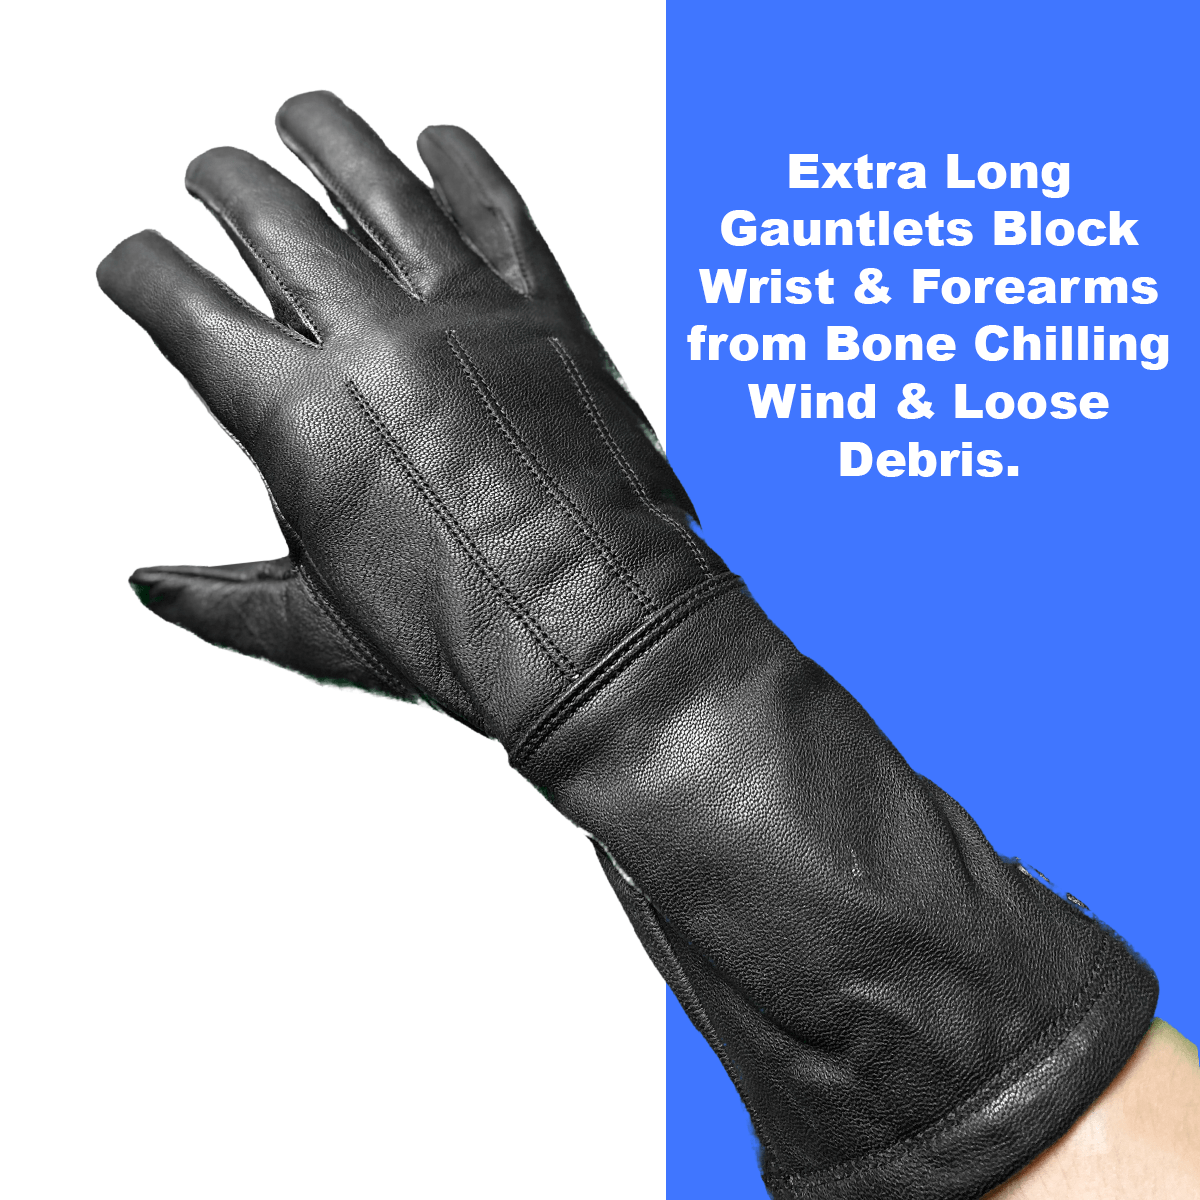 Gauntlet style glove